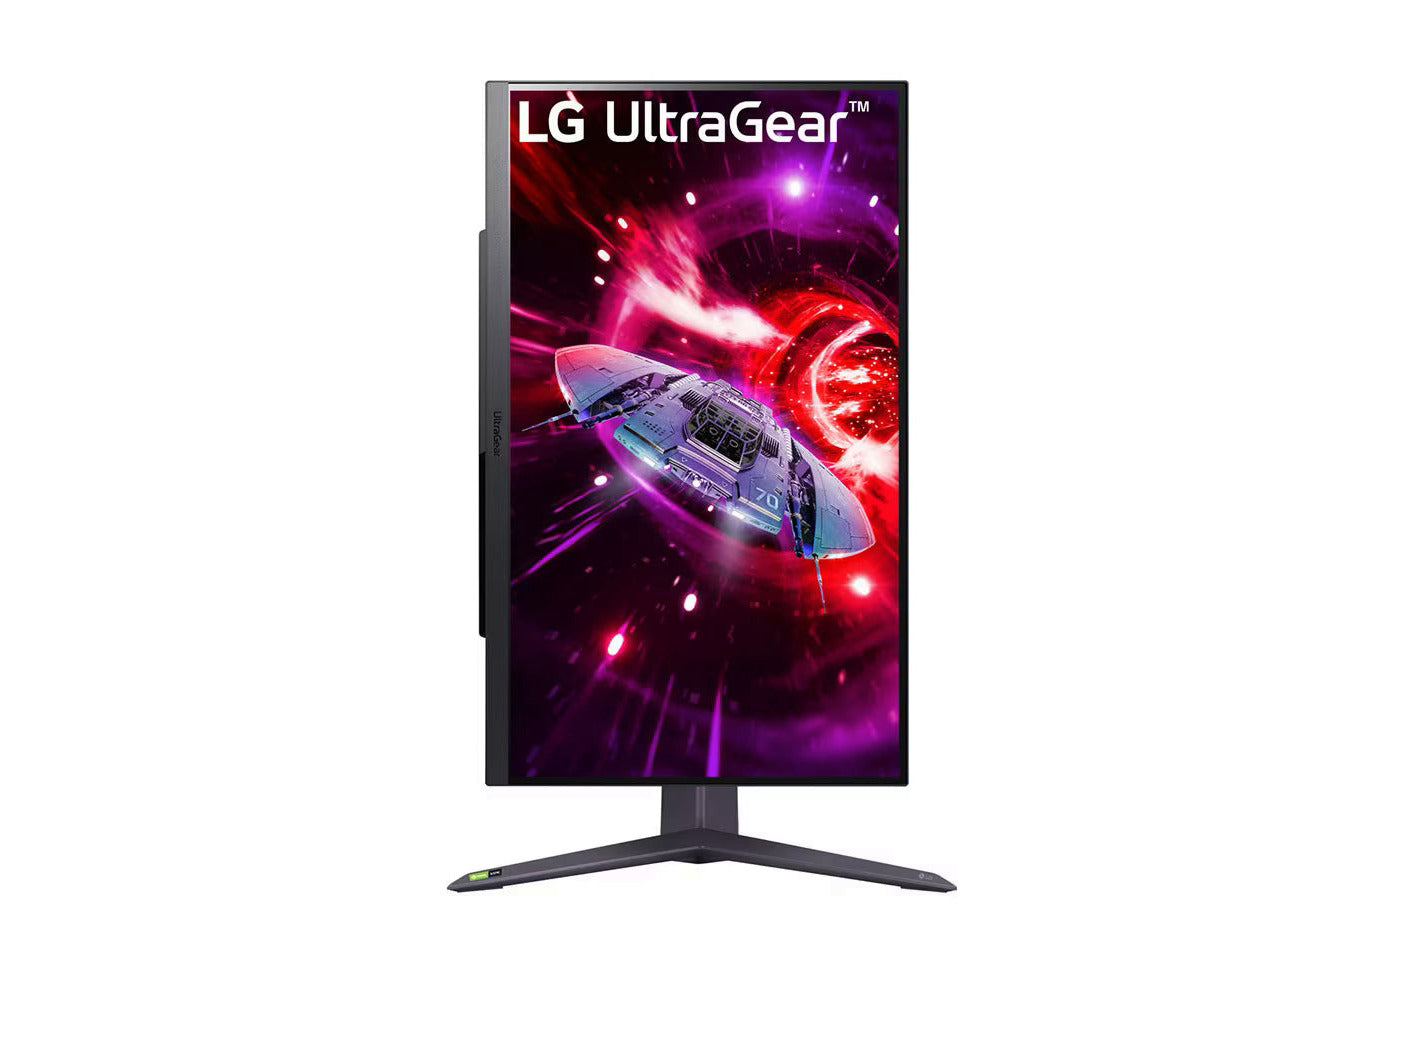 LG 32GR75Q-B 2K Gaming monitor előlnézetben talpon, pivot módban elforgatva. A kijelzőn ultragear logó és lila színekben száguldó űrhajó.